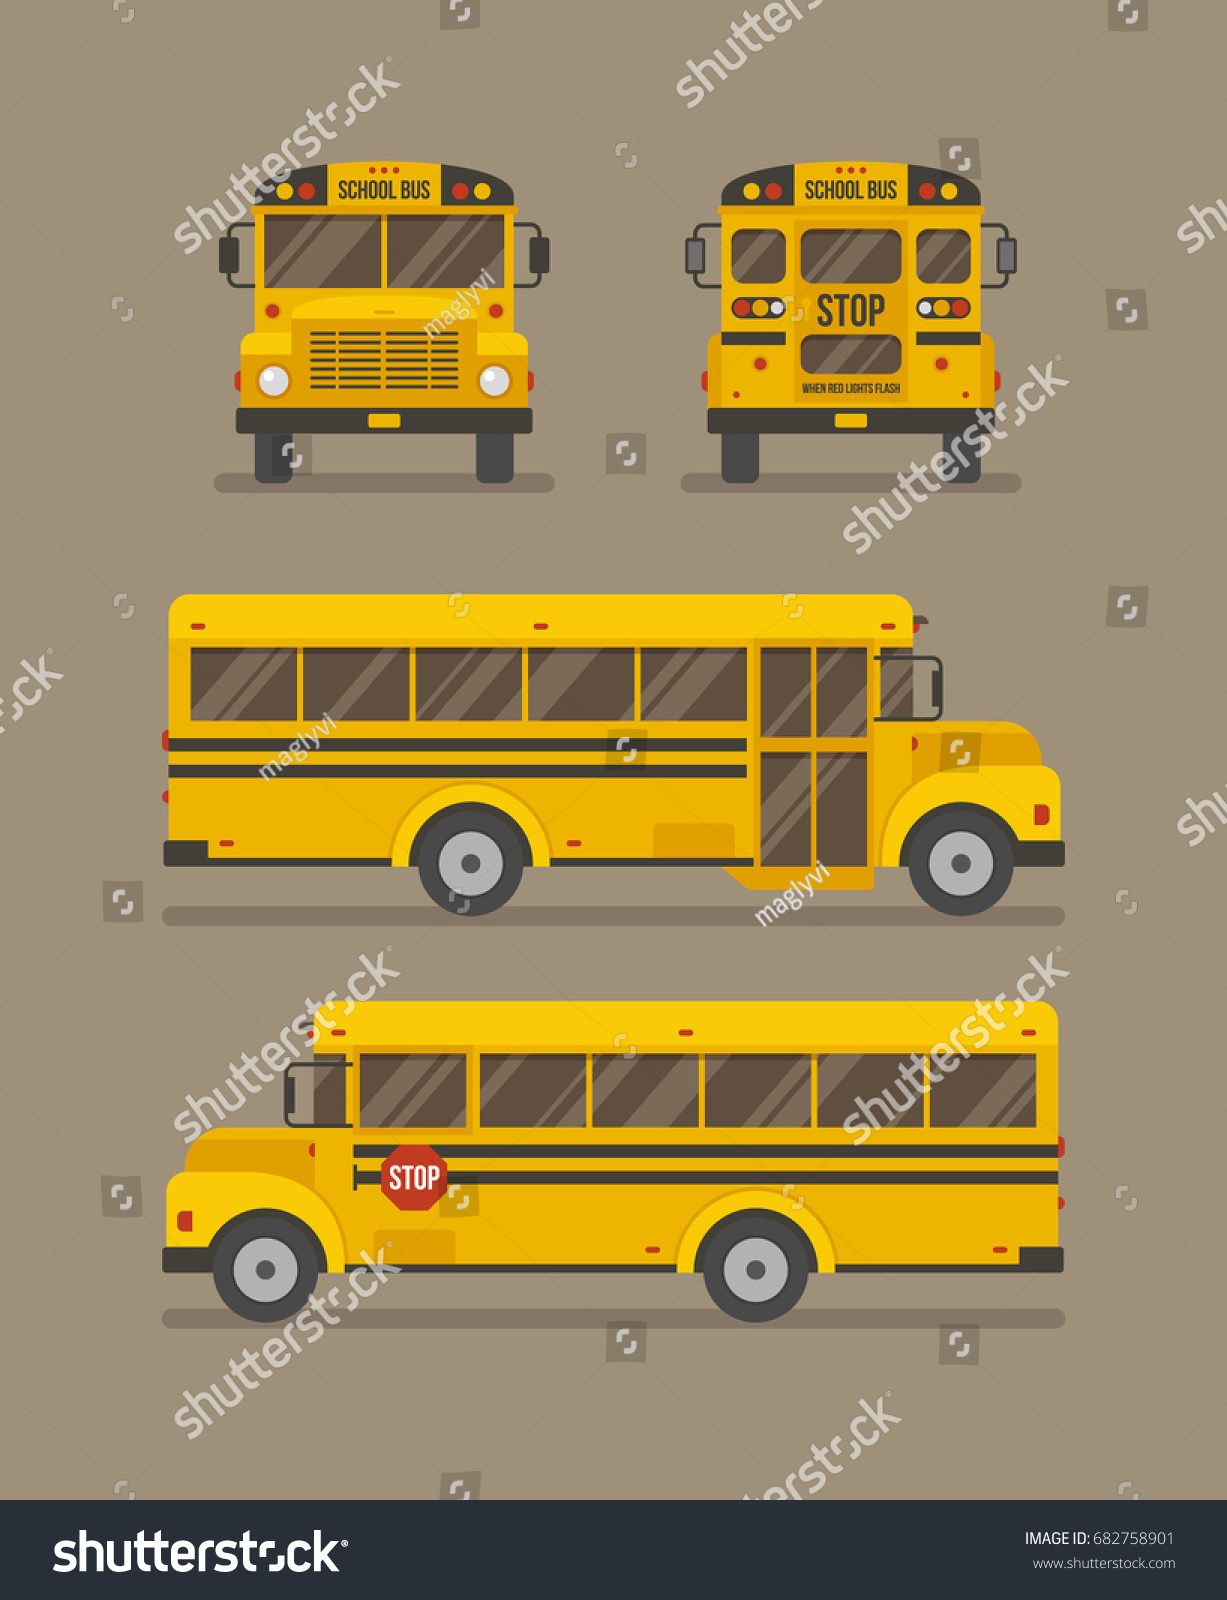 スクールバスのフラットイラスト 正面 背面 および2つの側面図 のベクター画像素材 ロイヤリティフリー